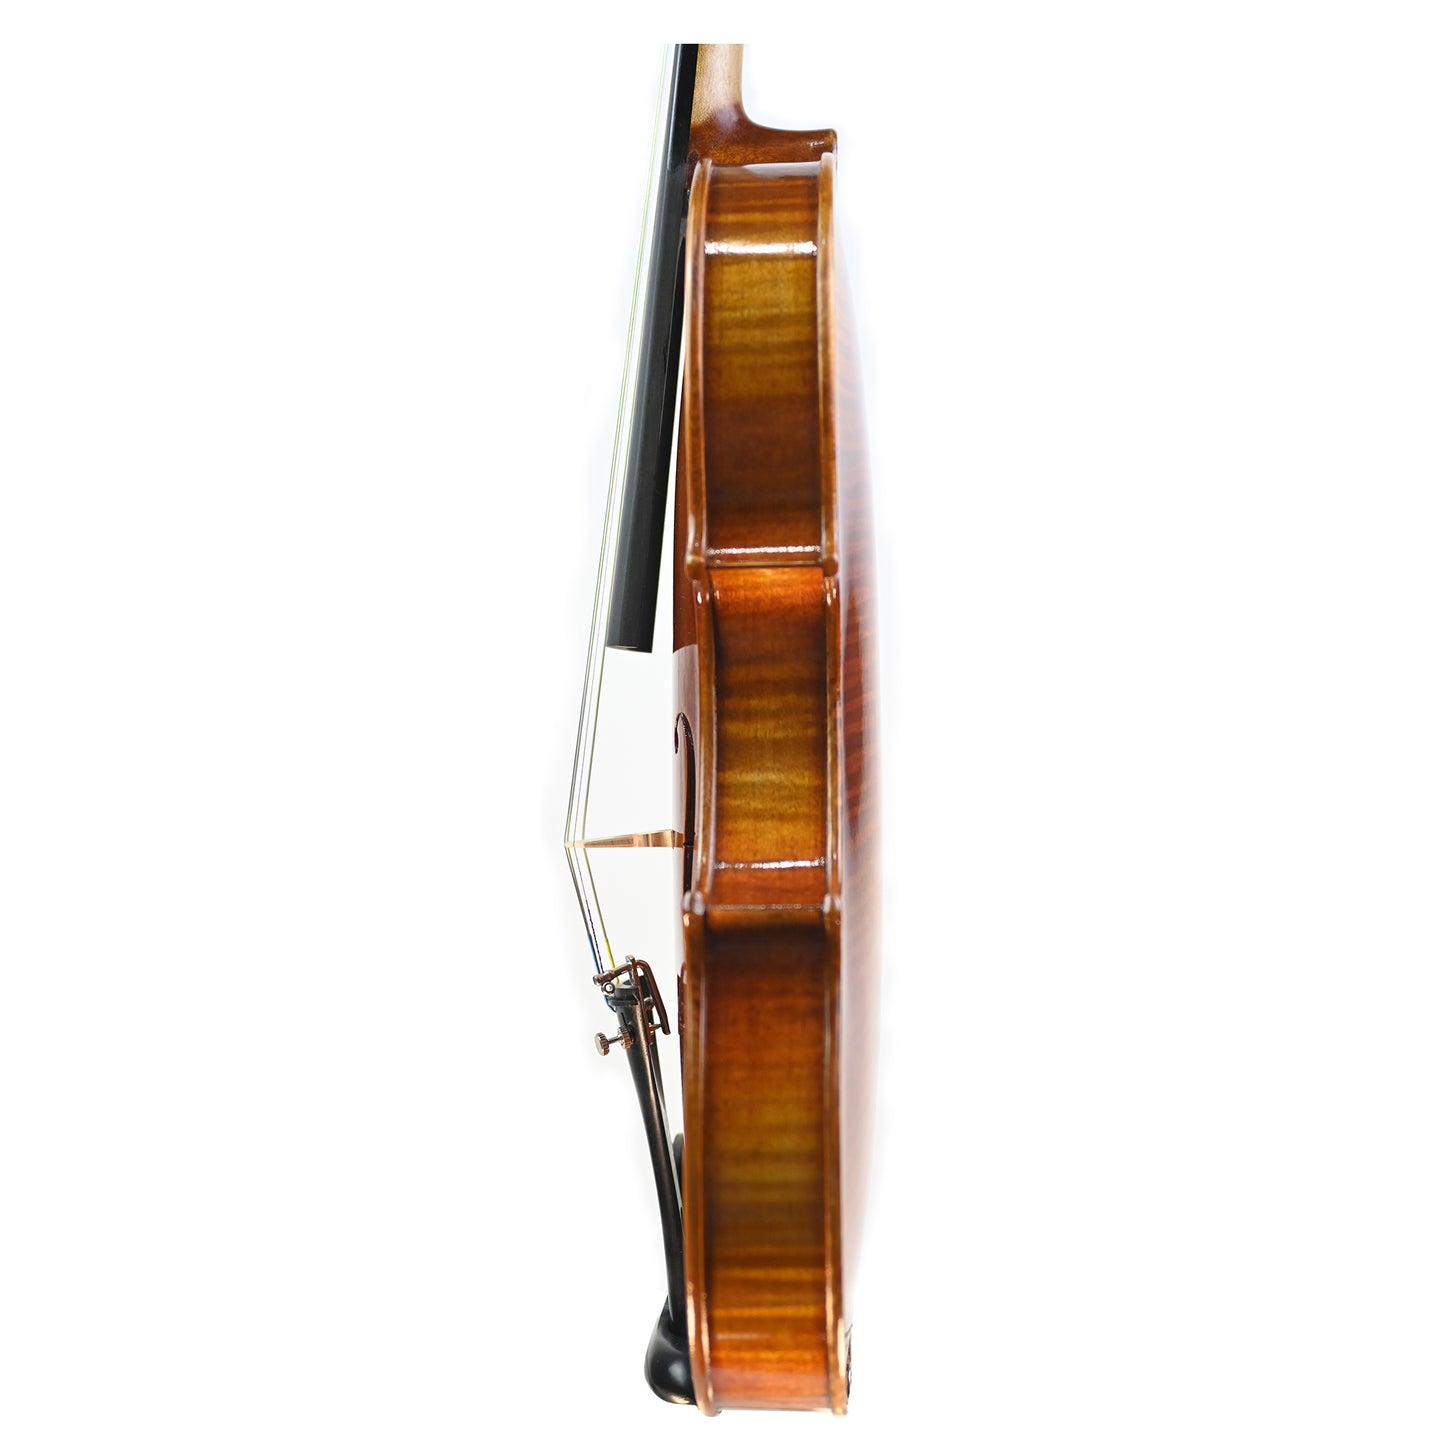 7009 beginner violin left rib